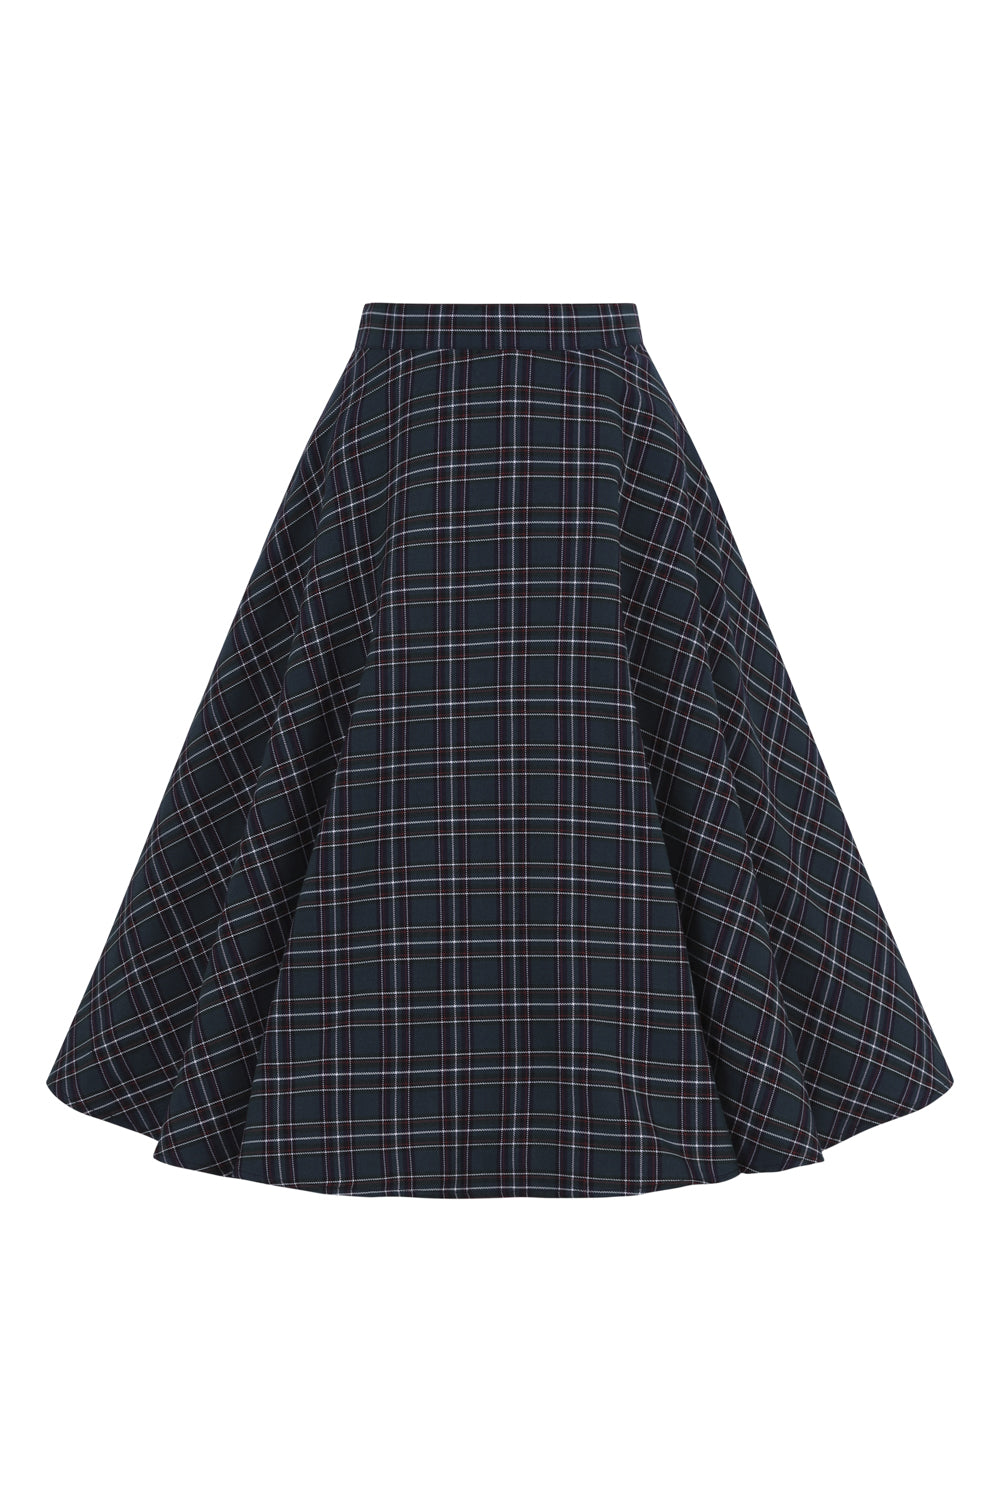 Peebles 50's Skirt